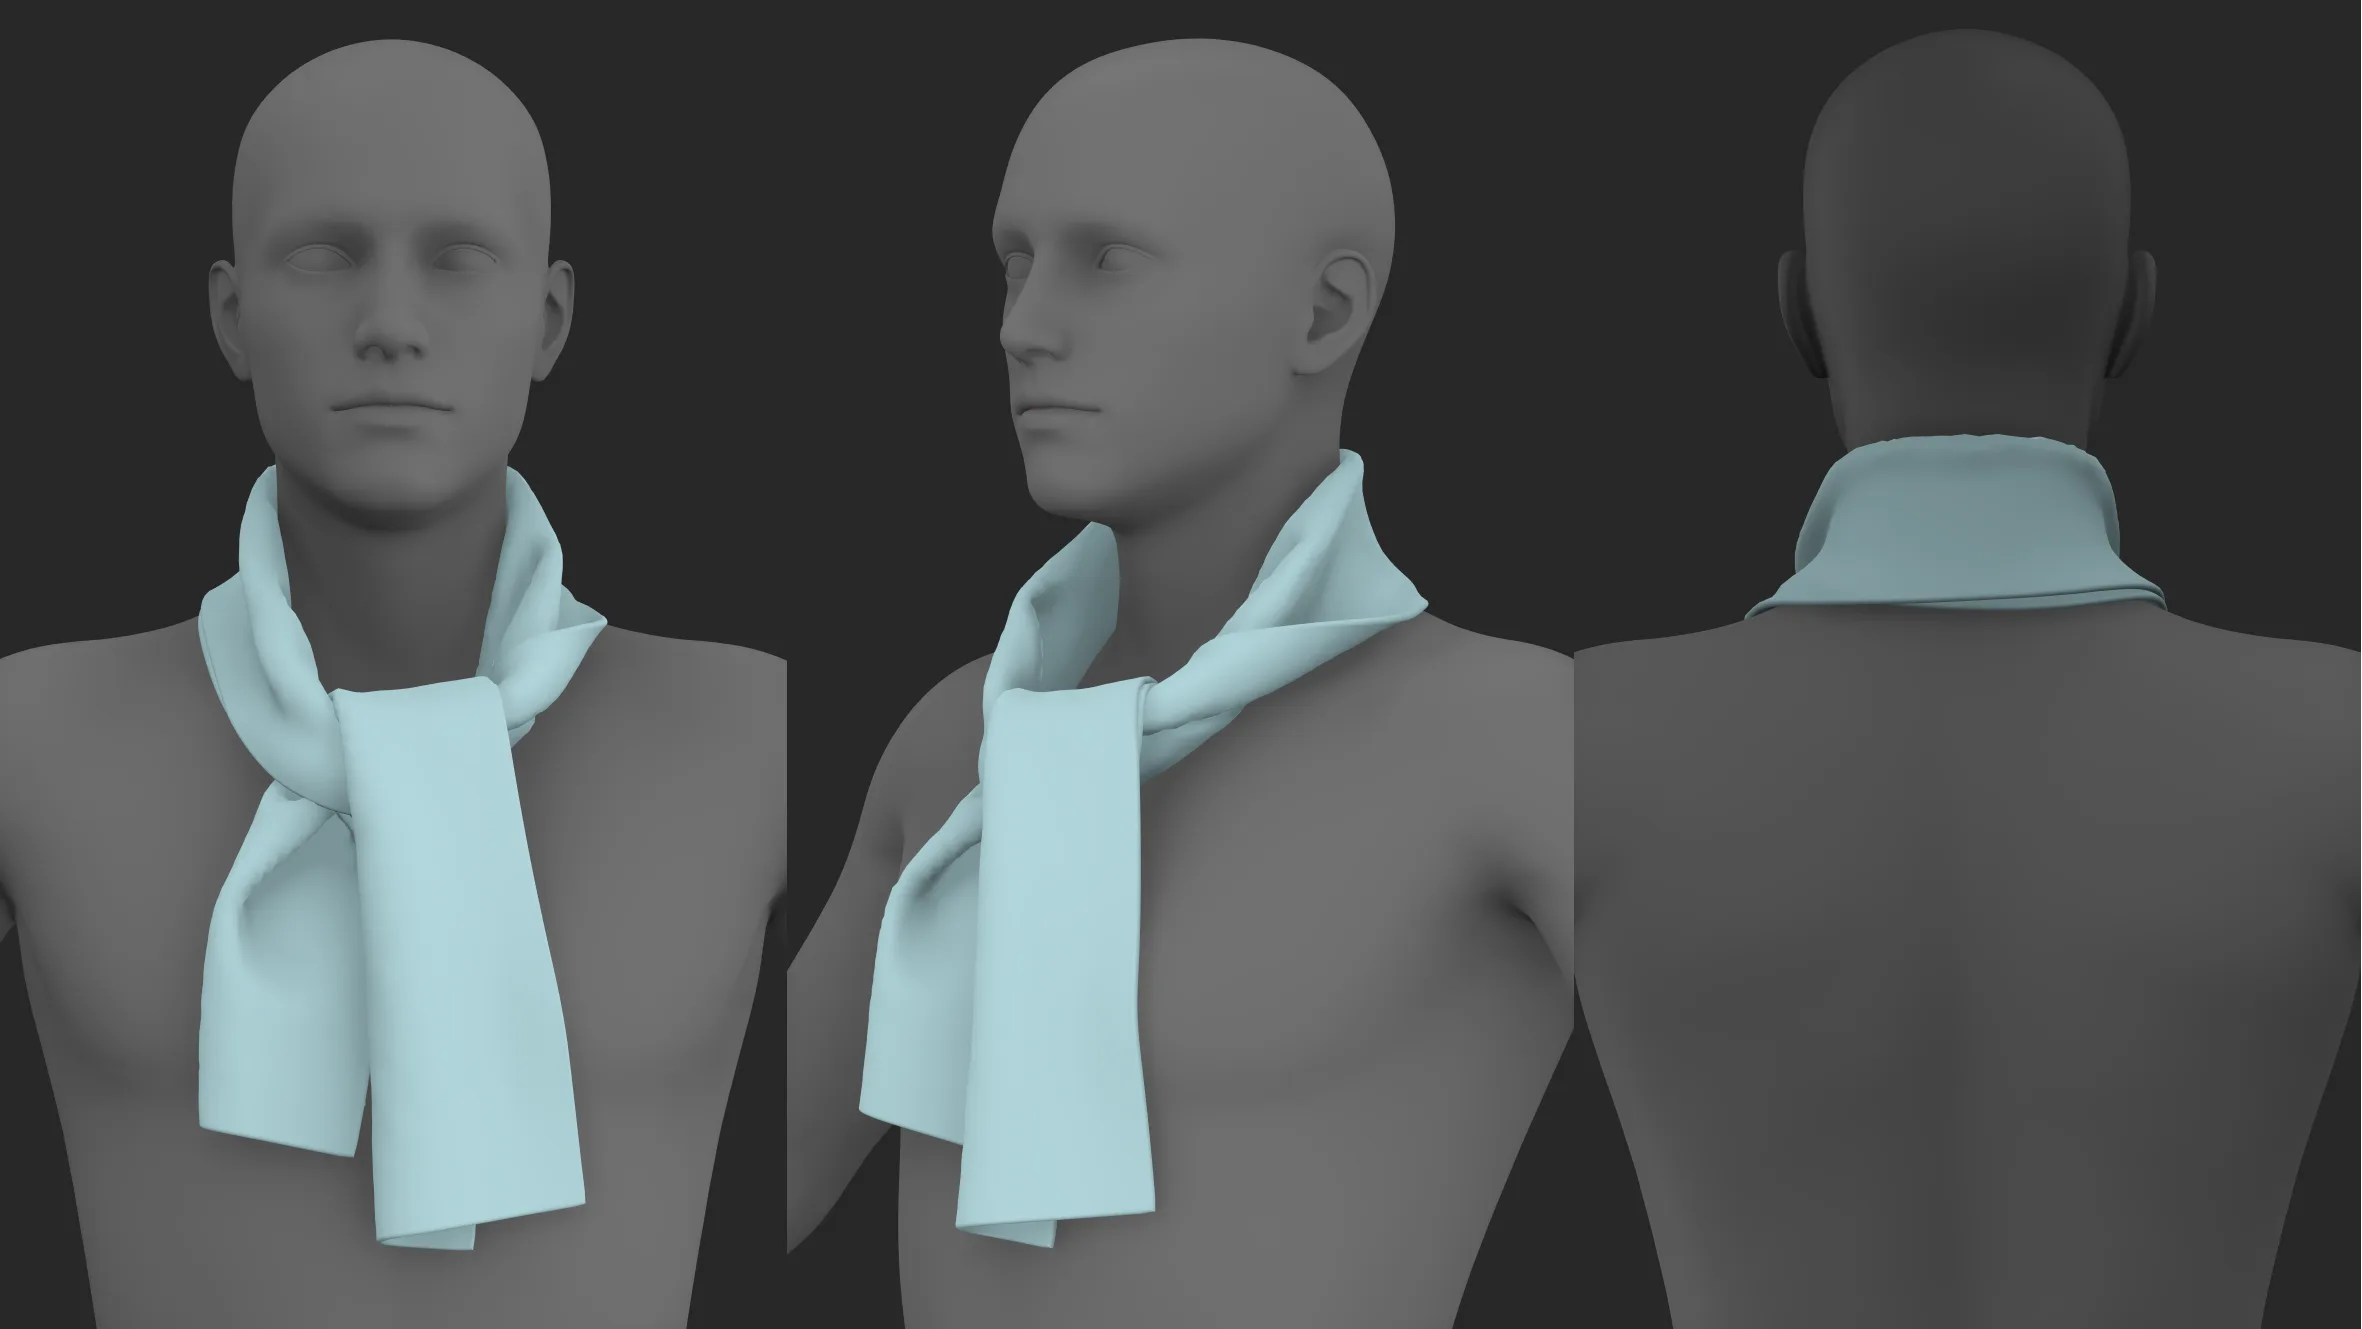 Basic scarves pack. Marvelous / CLO 3D / zprj obj fbx